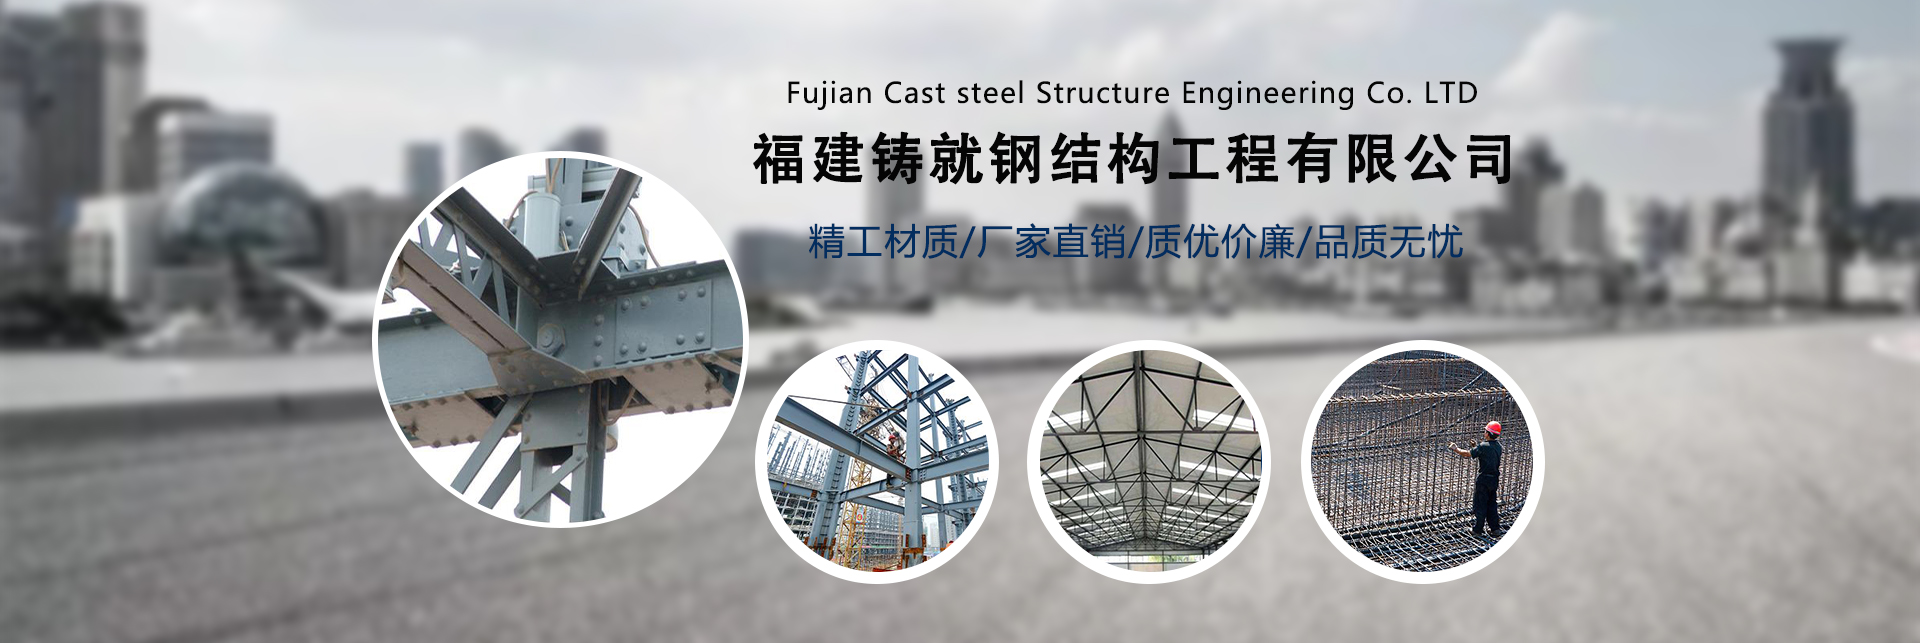 鋼結構,福州鋼結構廠家,福州鋼結構加工